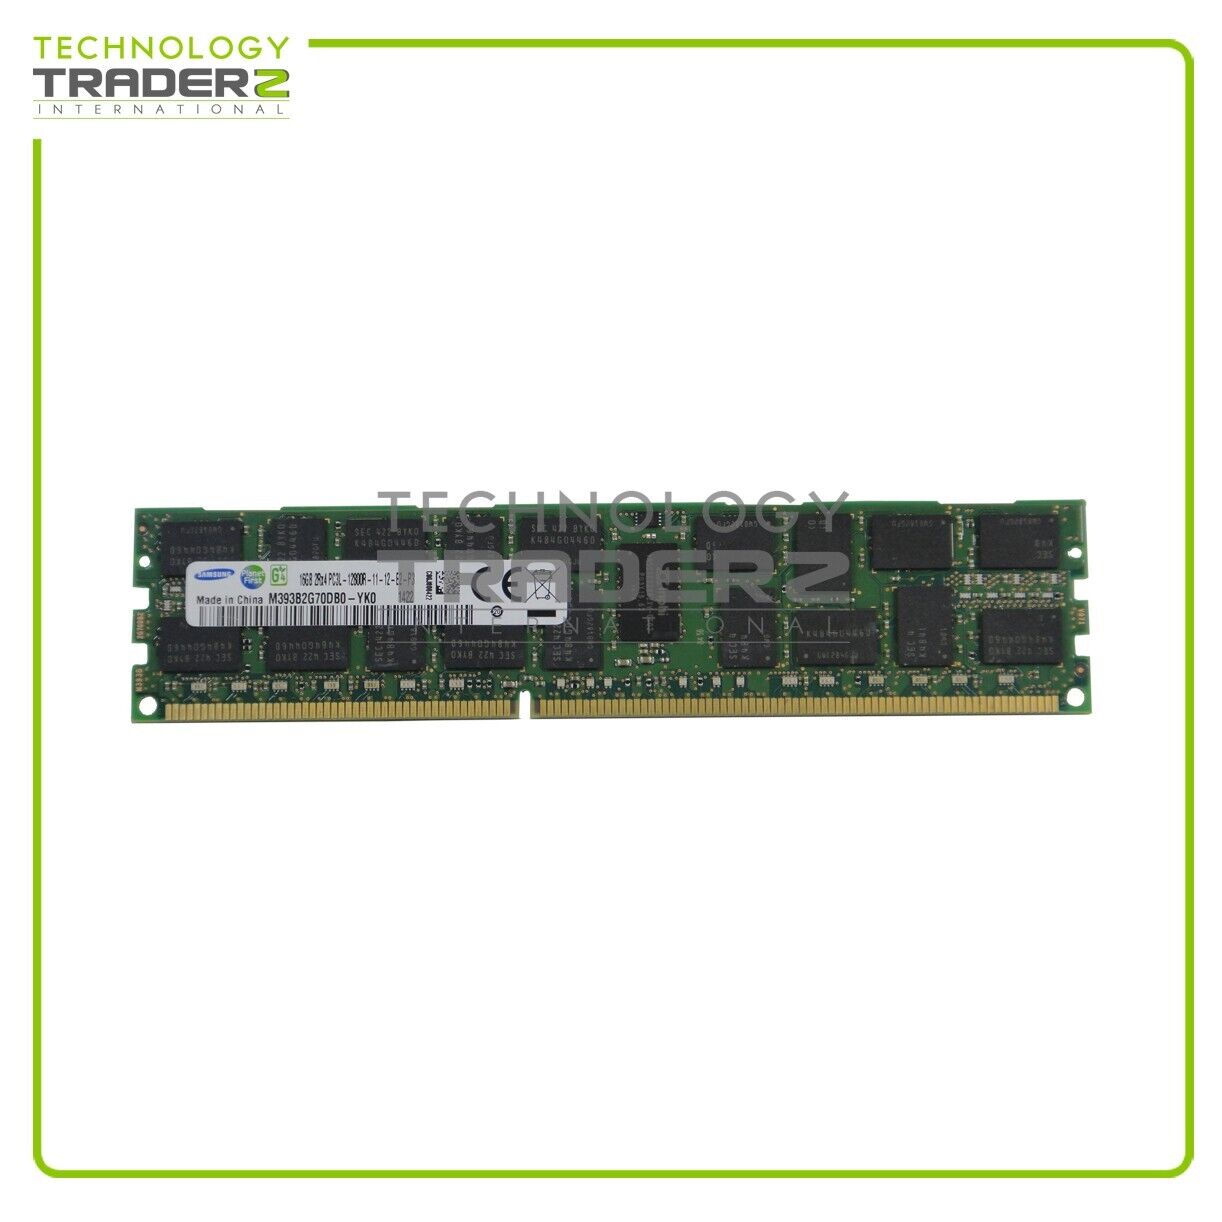 M393B2G70DB0-YK0 Samsung 16GB PC3-12800 DDR3-1600MHz ECC REG Dual Rank Memory